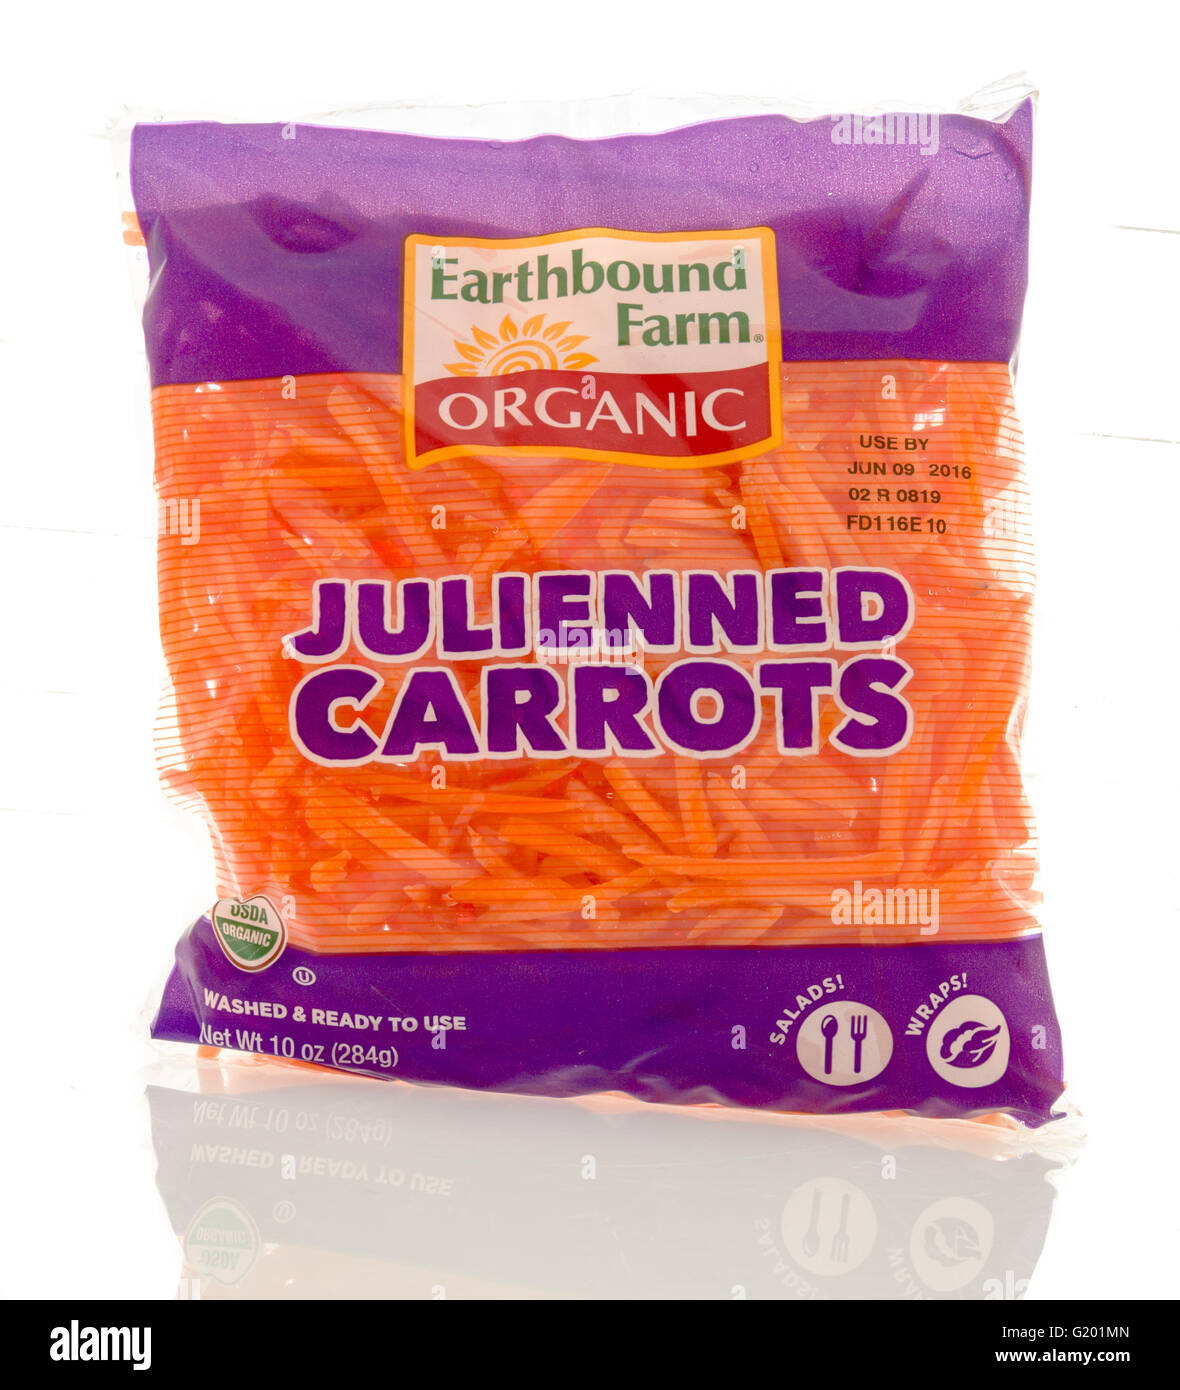 Winneconne, WI - 19 mai 2016 : le paquet de julienne de carottes biologiques Earthbound sur un fond isolé Banque D'Images